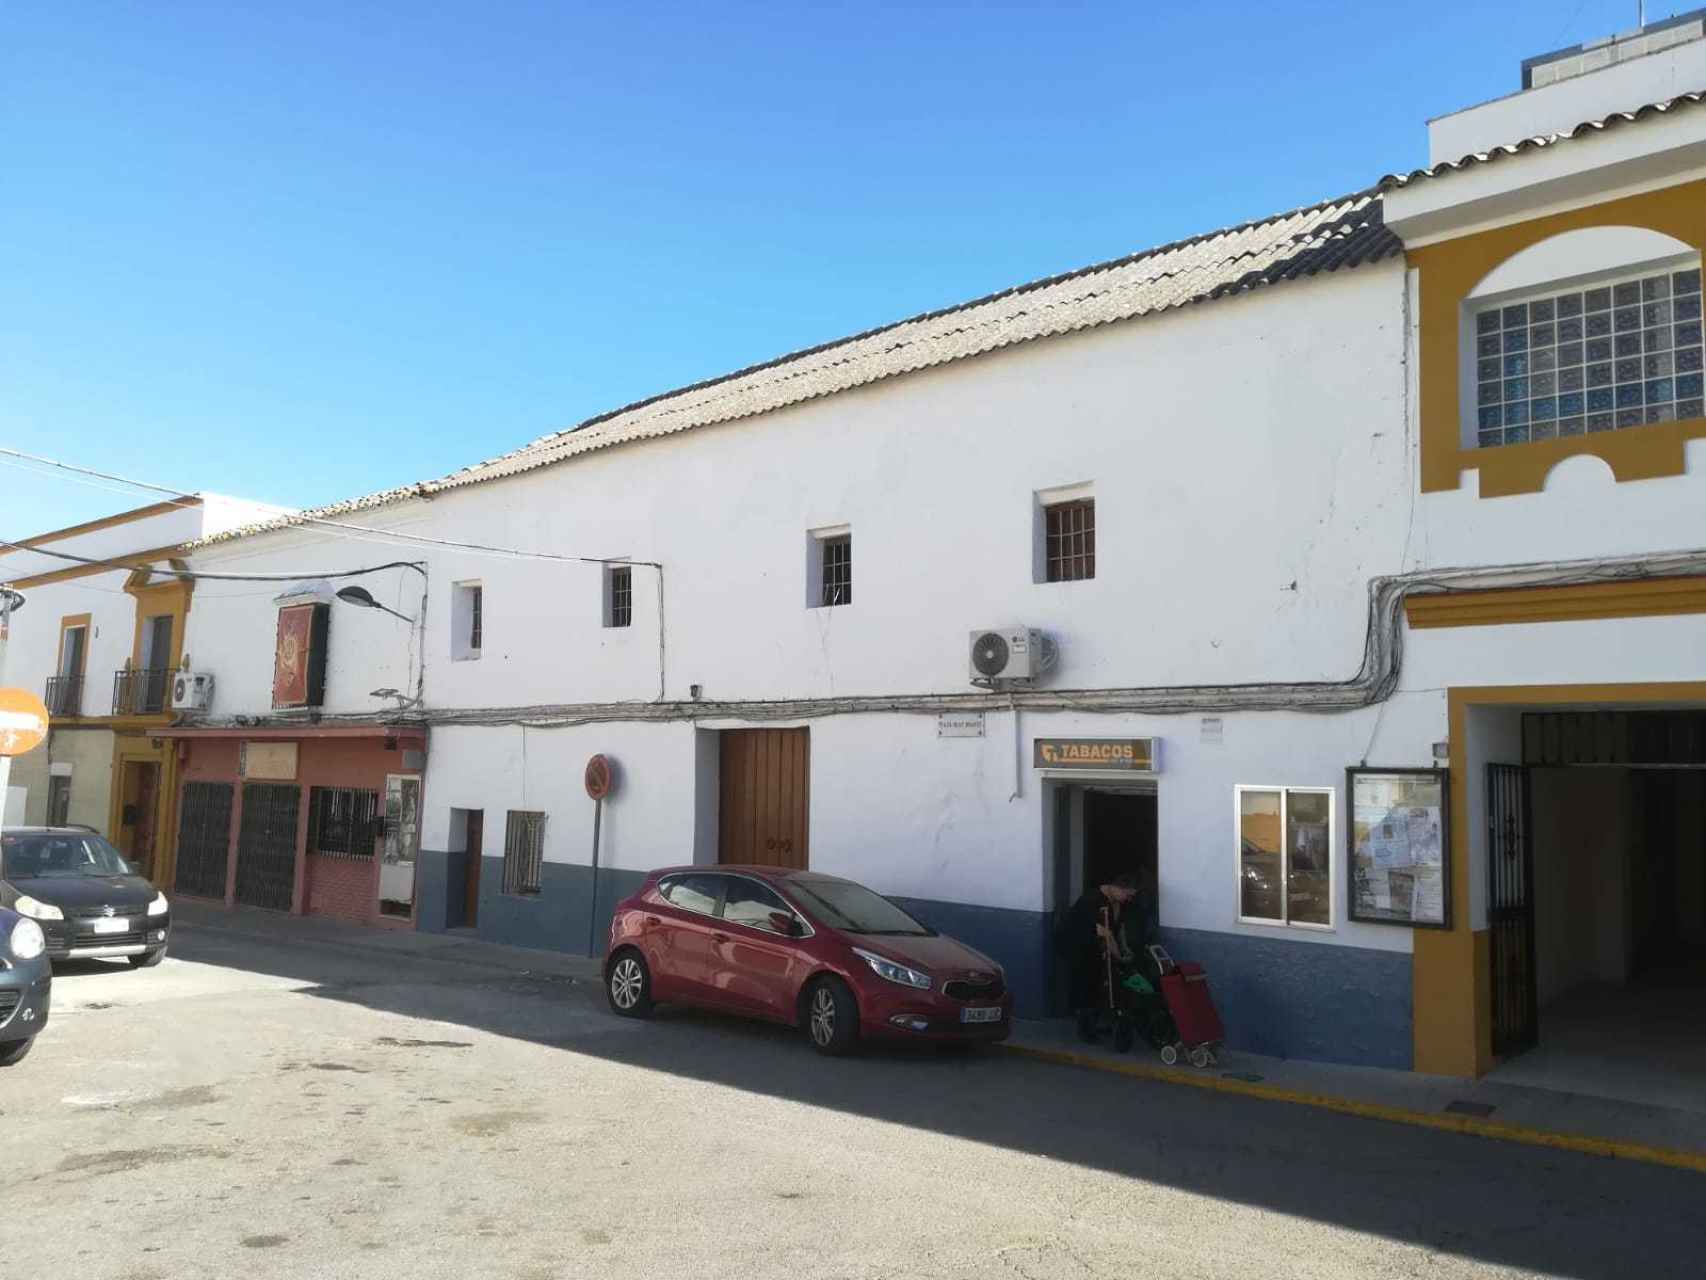 Casa que albergaba la antigua posada de El Carpio (Córdoba), donde residía Pedro Gutiérrez, amigo del excomisario Villarejo.